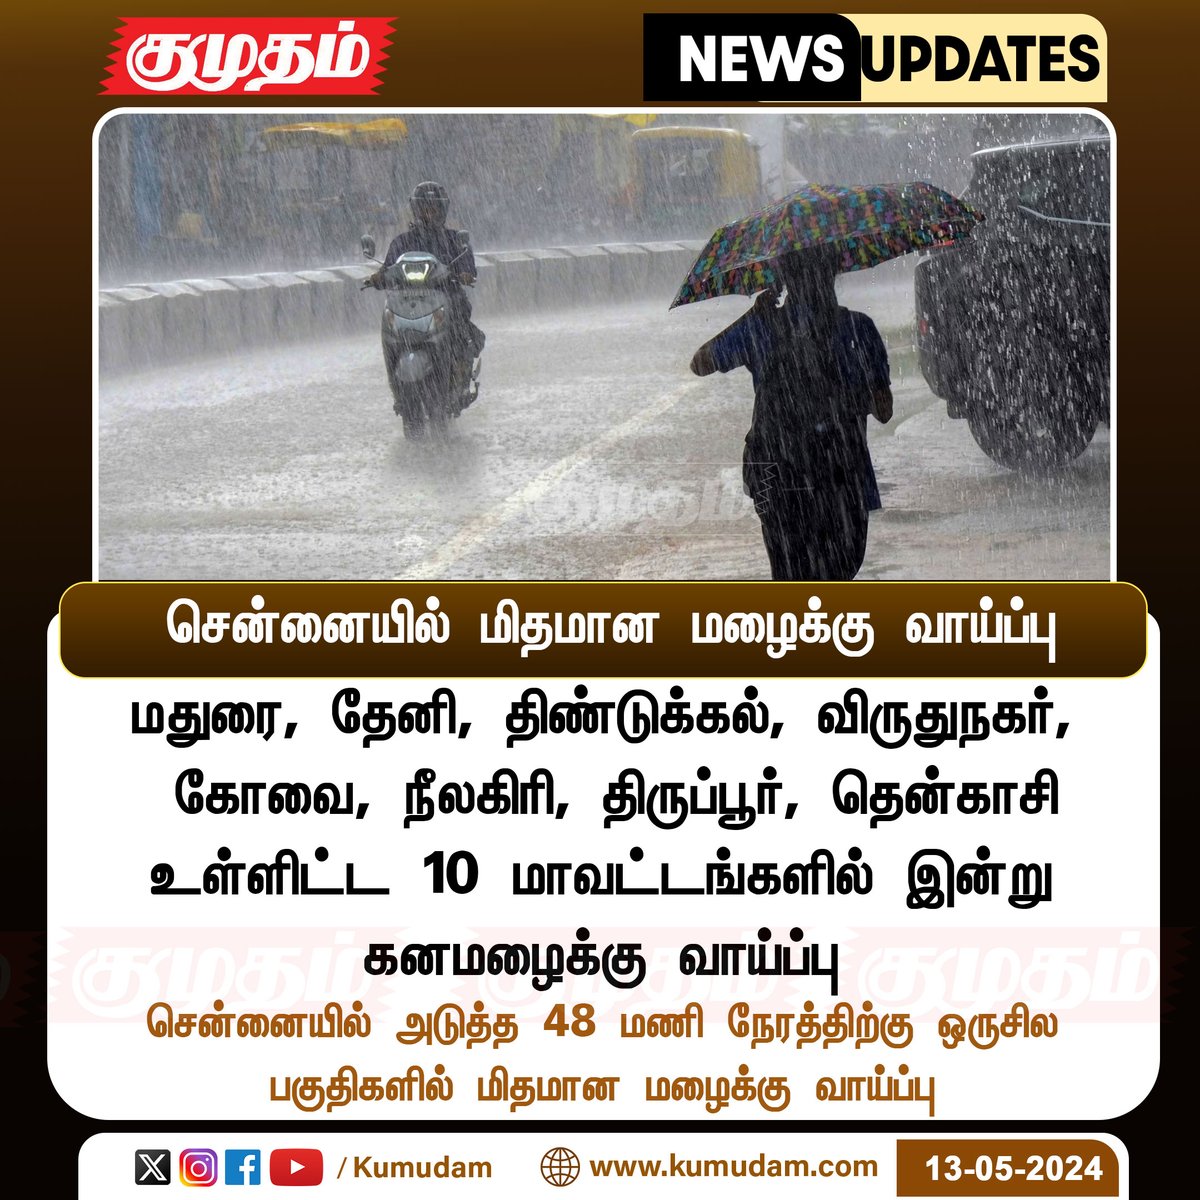 சென்னையில் மிதமான மழைக்கு வாய்ப்பு kumudam.com | #TNrain | #ChennaiRain | #RainUpdate | #WeatherUpdate